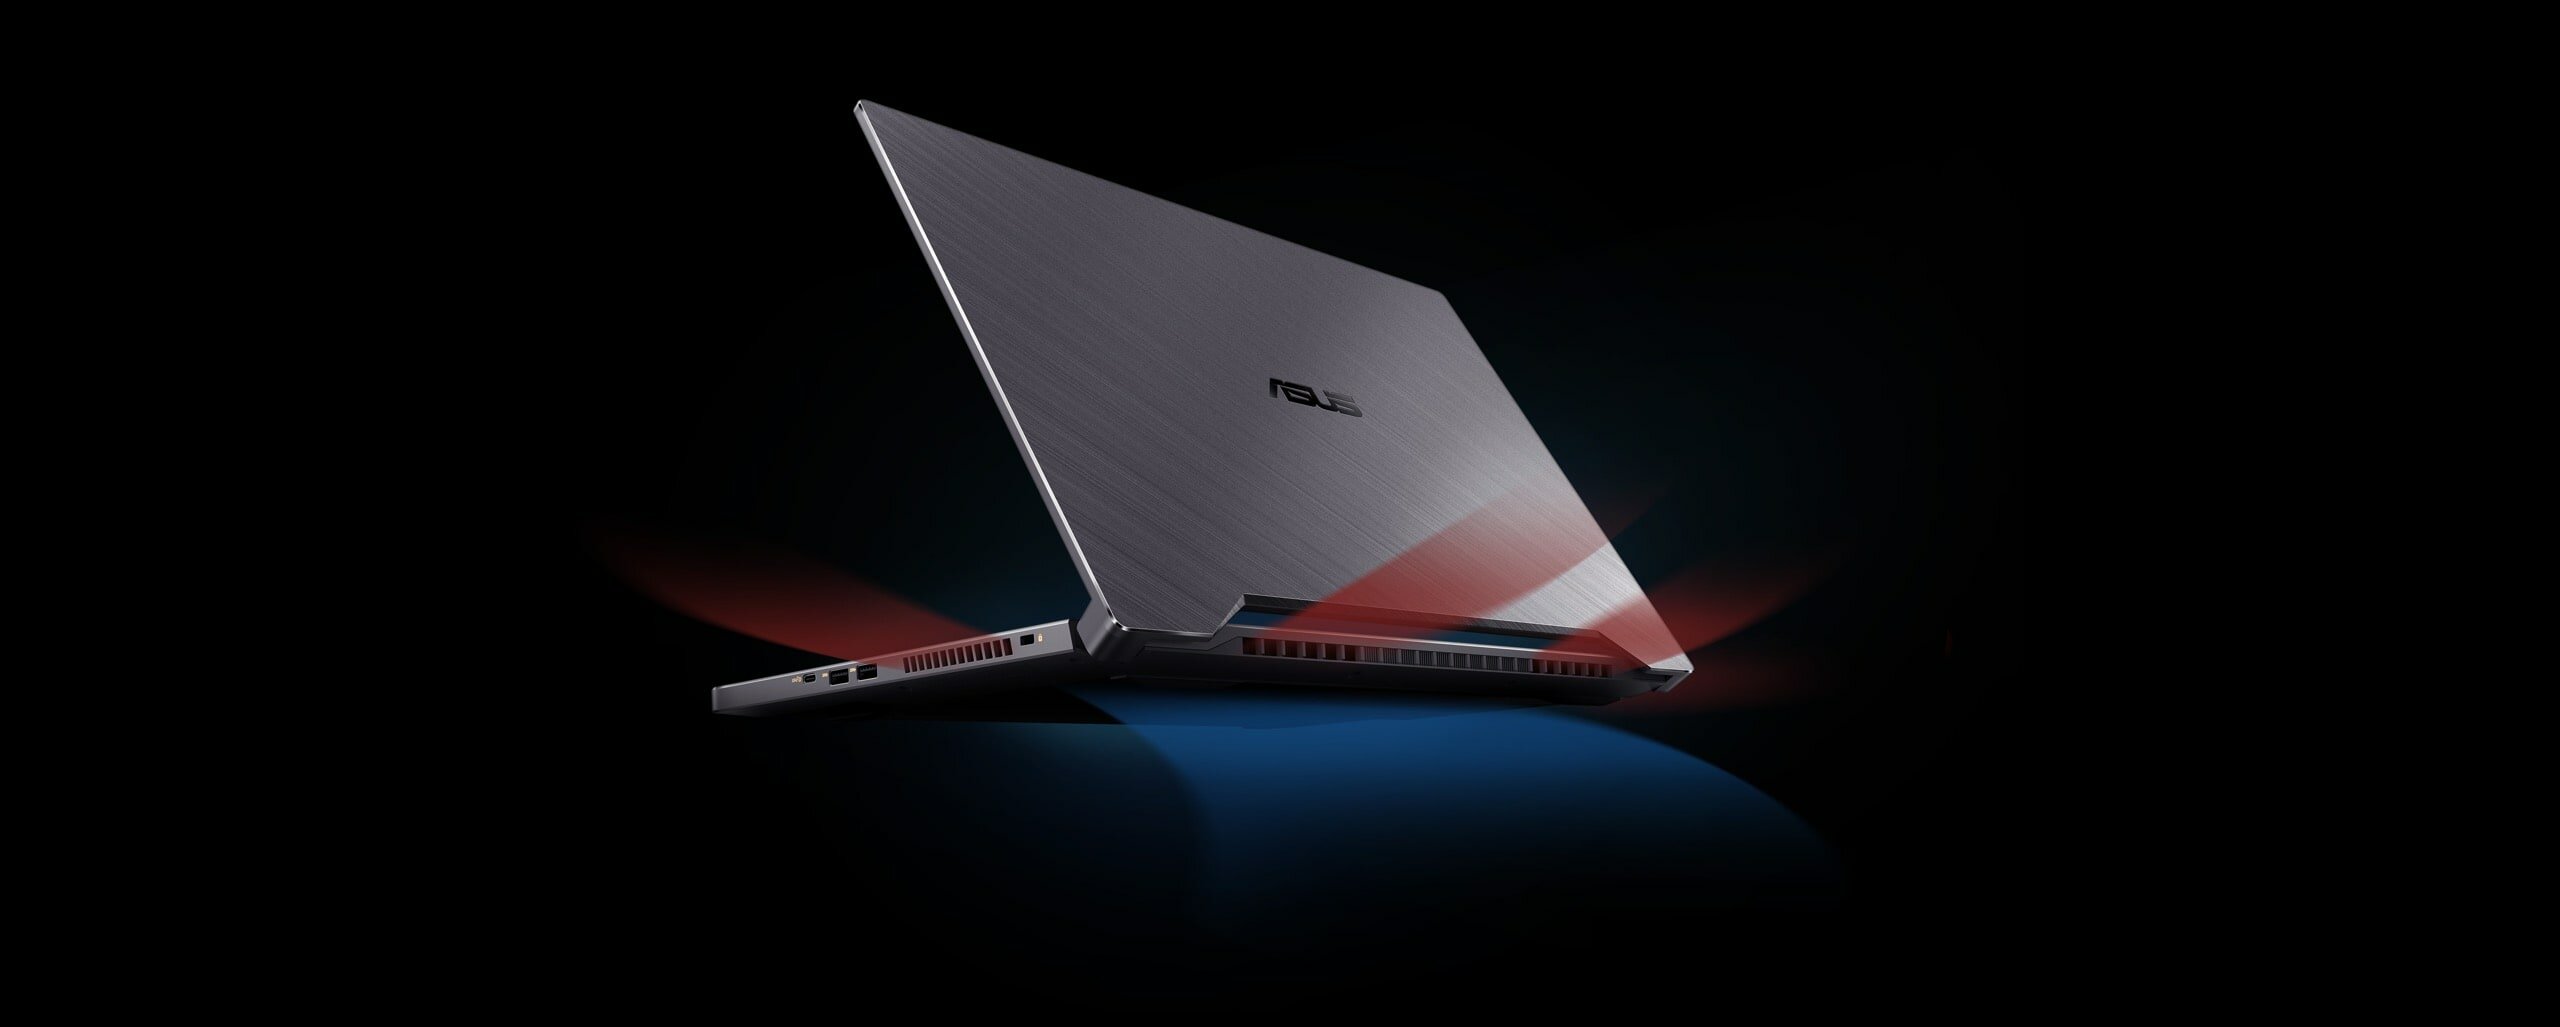 Laptop ASUS ProArt StudioBook Pro 15 W500G5T-HC016R szary widok pod kątem na tył wizualizacja przepływu powietrza